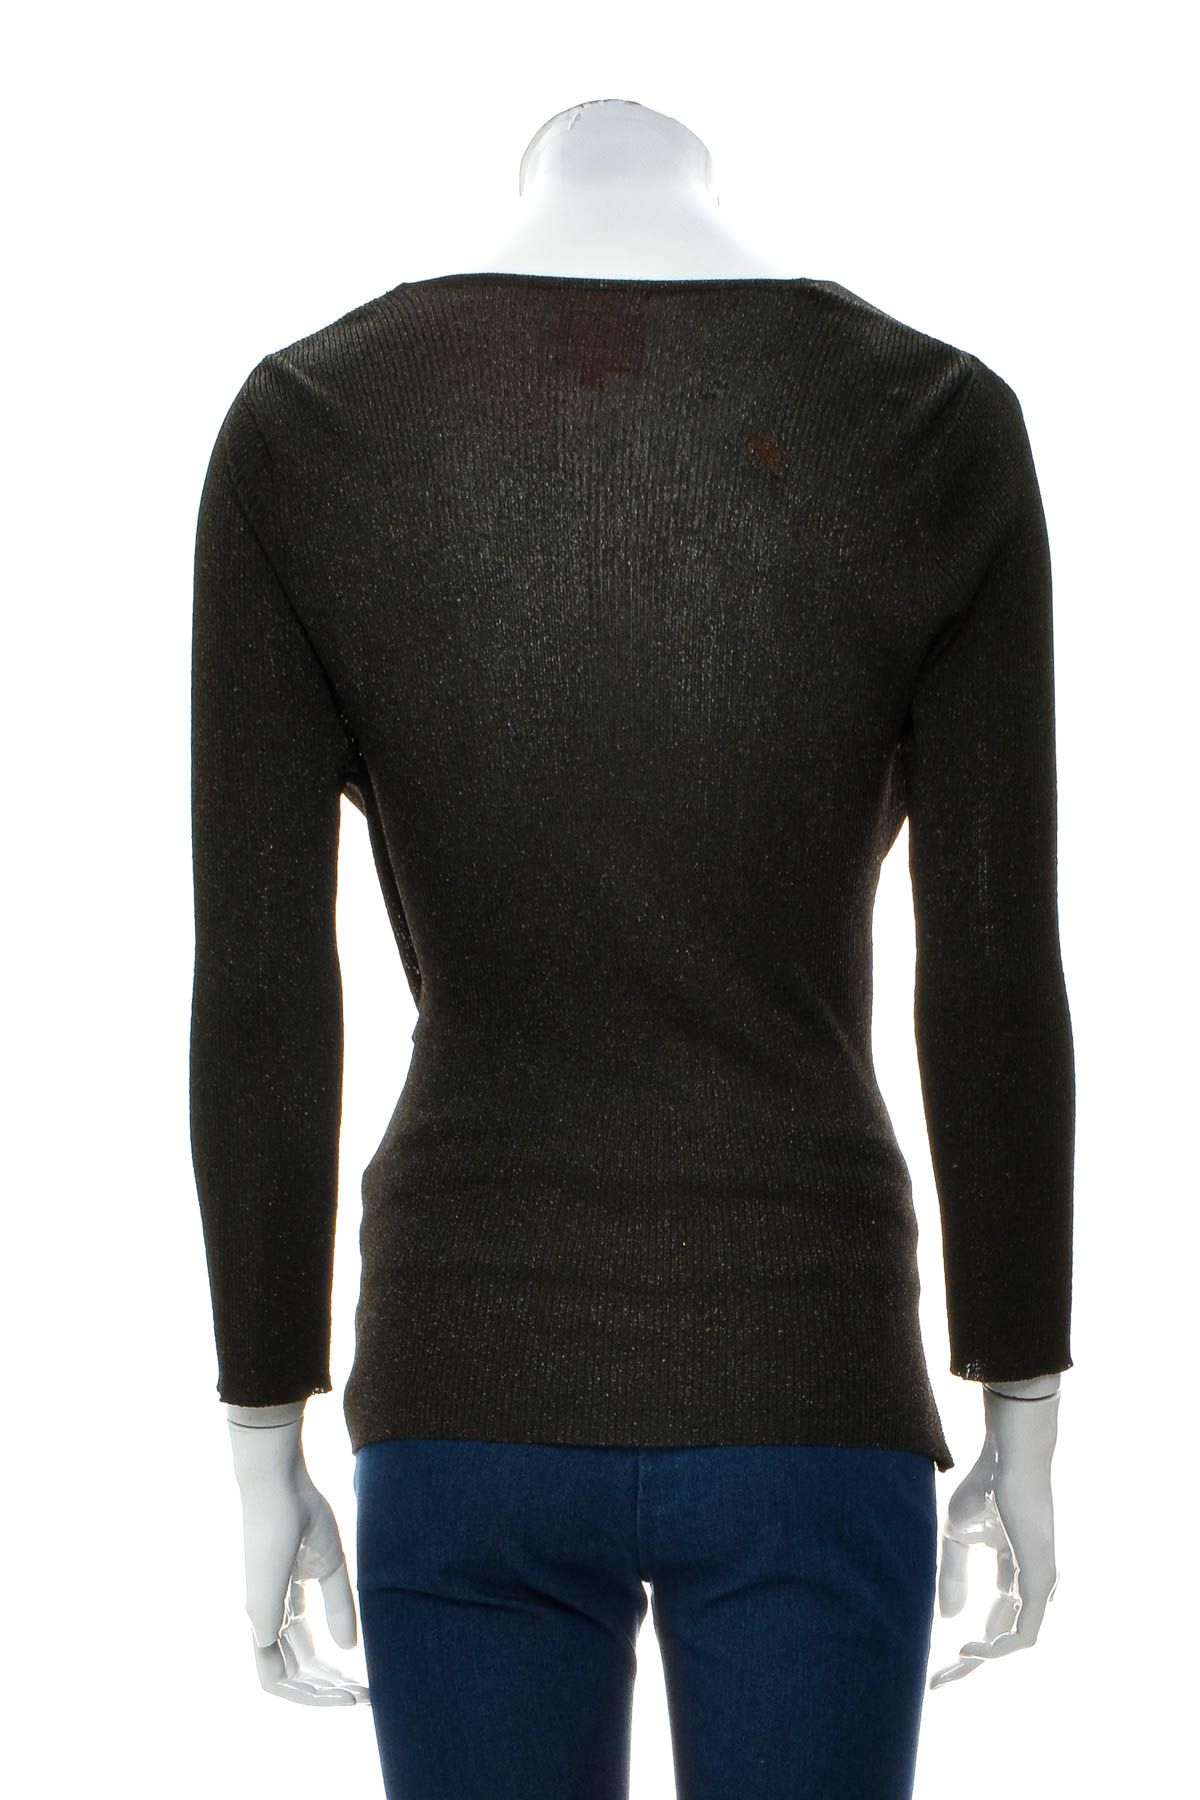 Women's sweater - Derhy - 1